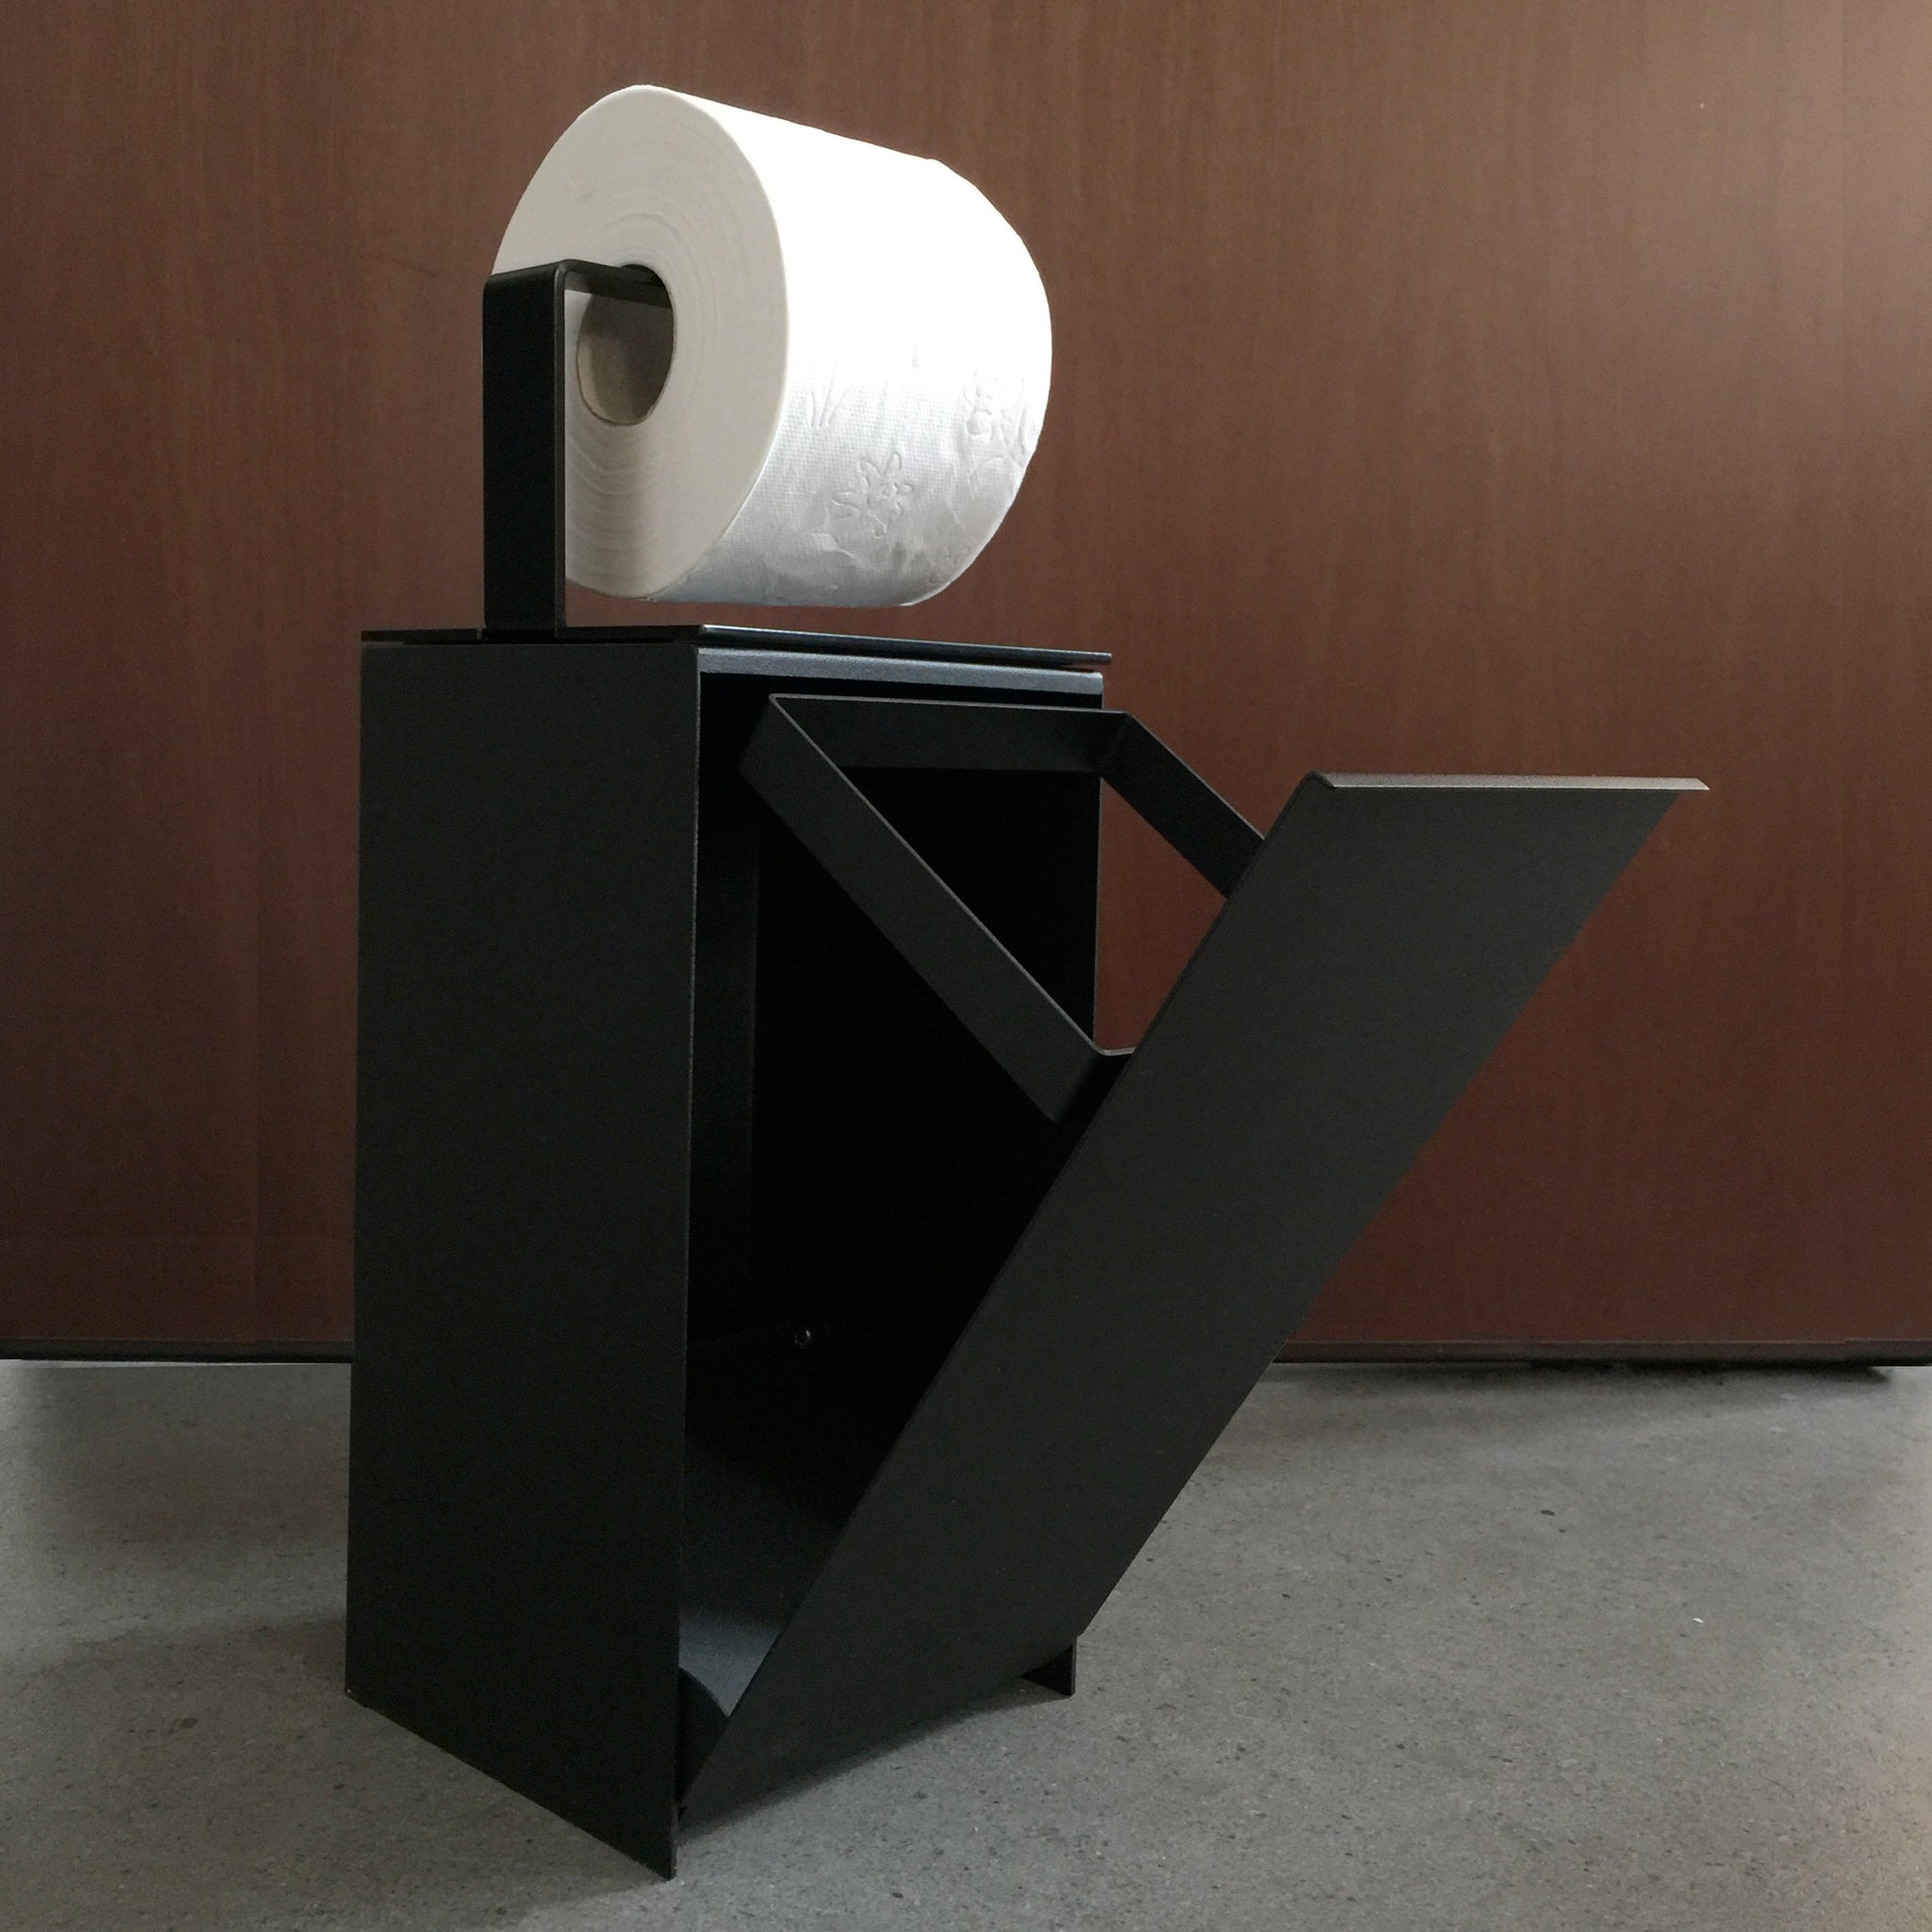 Bathroom bin + Roll holder accessory | Franz - mg12